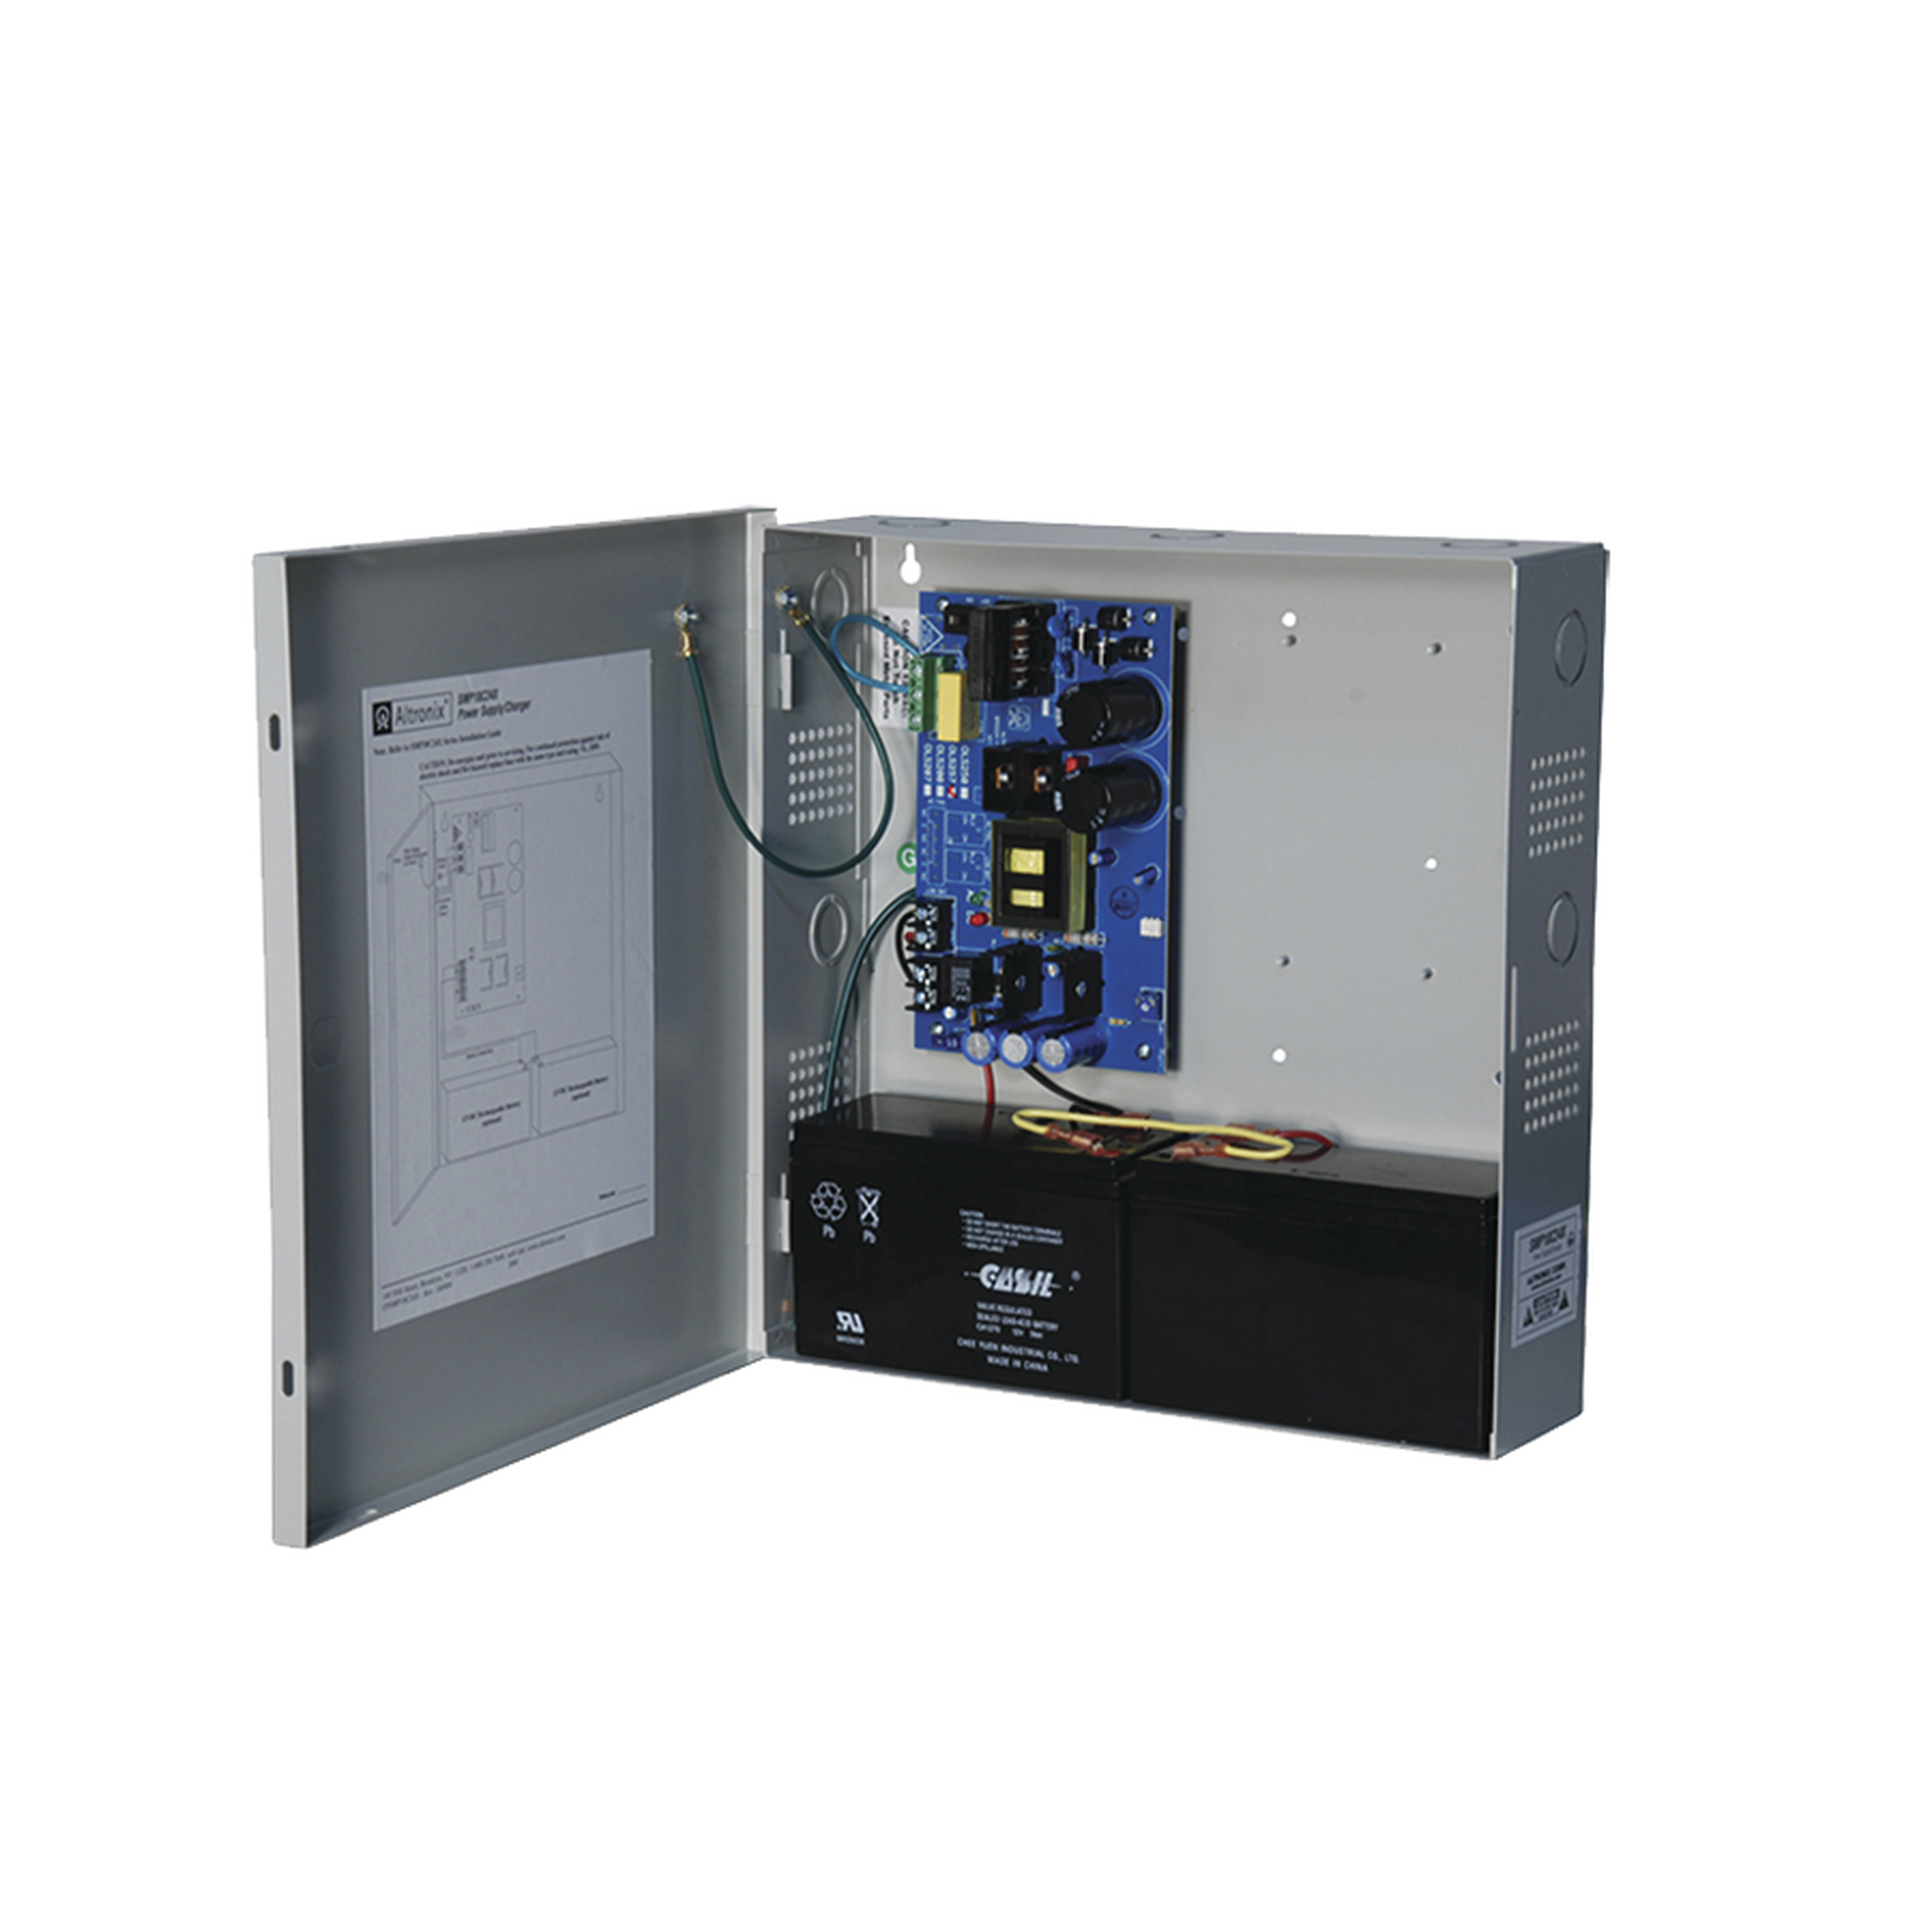 Fuente de Poder ALTRONIX de 24 Vcd @ 10 Amper / 1 salida / Ideal para aplicaciones de Control Acceso/Intrusión / CCTV / Con voltaje de entrada de 115 Vca / Con capacidad de baterías de respaldo / Requieren baterías